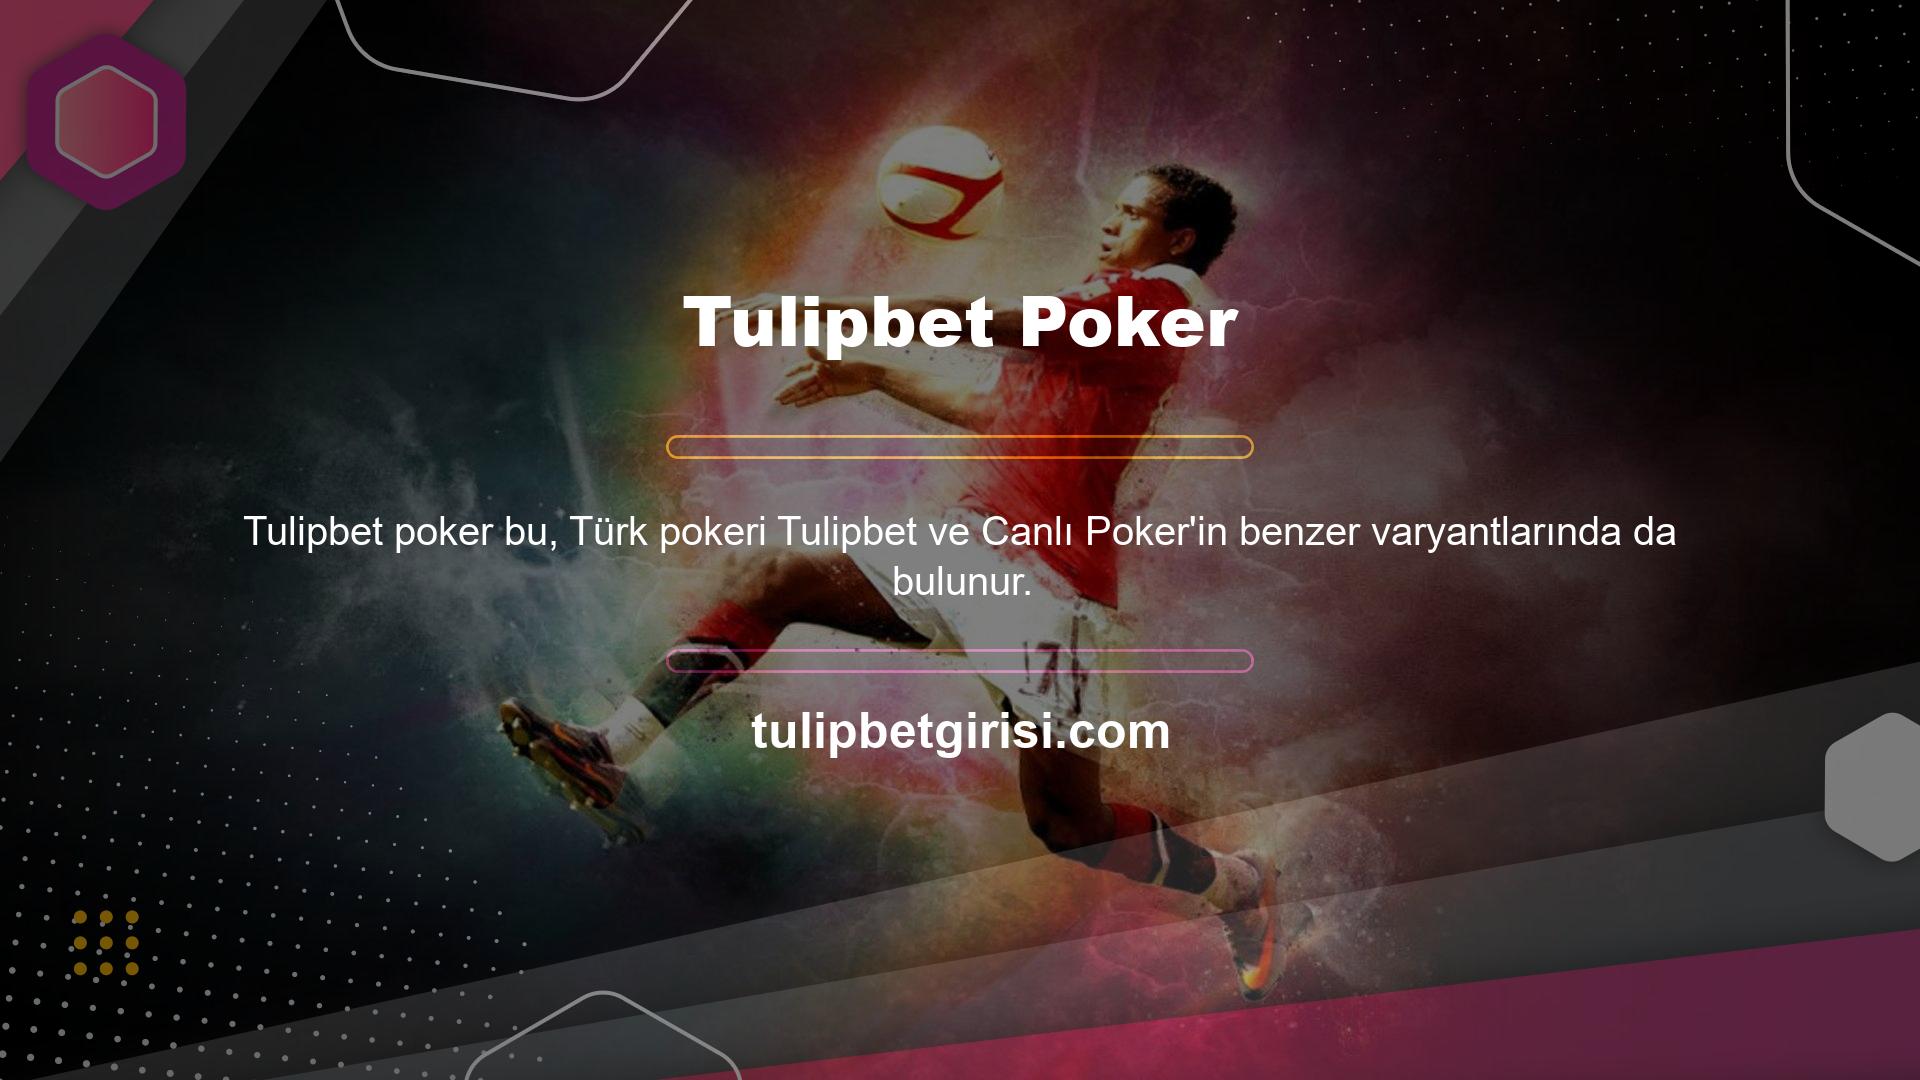 Ayrıca poker kategorisine ait barbut oyunu en popüler oyunlardan biridir bu nedenle Tulipbet web sitesini ziyaret eden kullanıcıların oyunun temasından asla sıkılmayacakları garanti edilmektedir